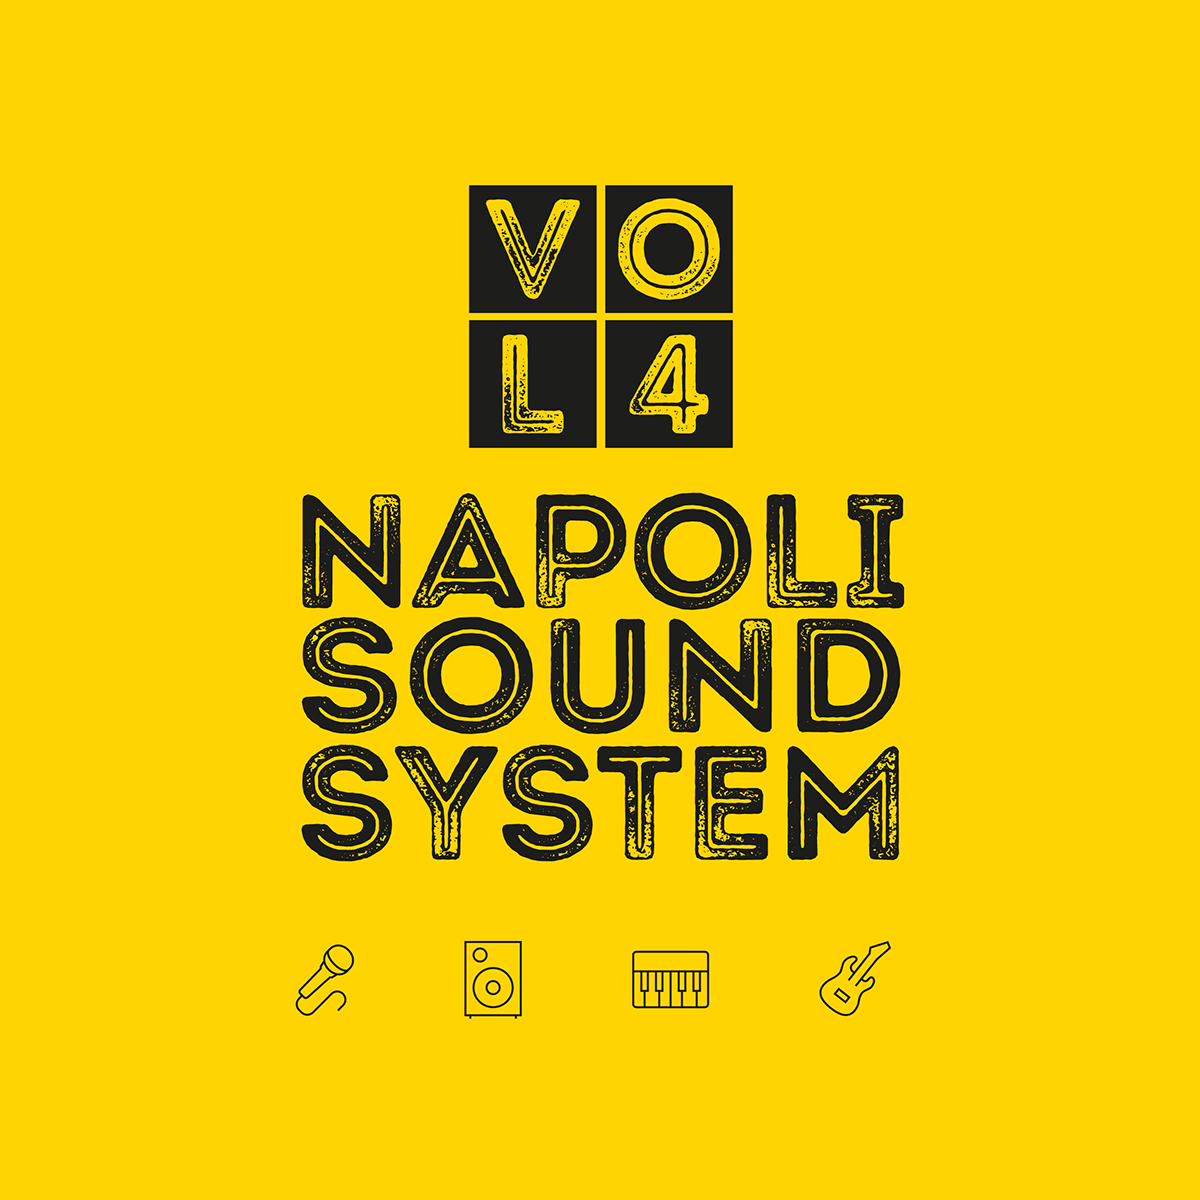 NAPOLI SOUND SYSTEM